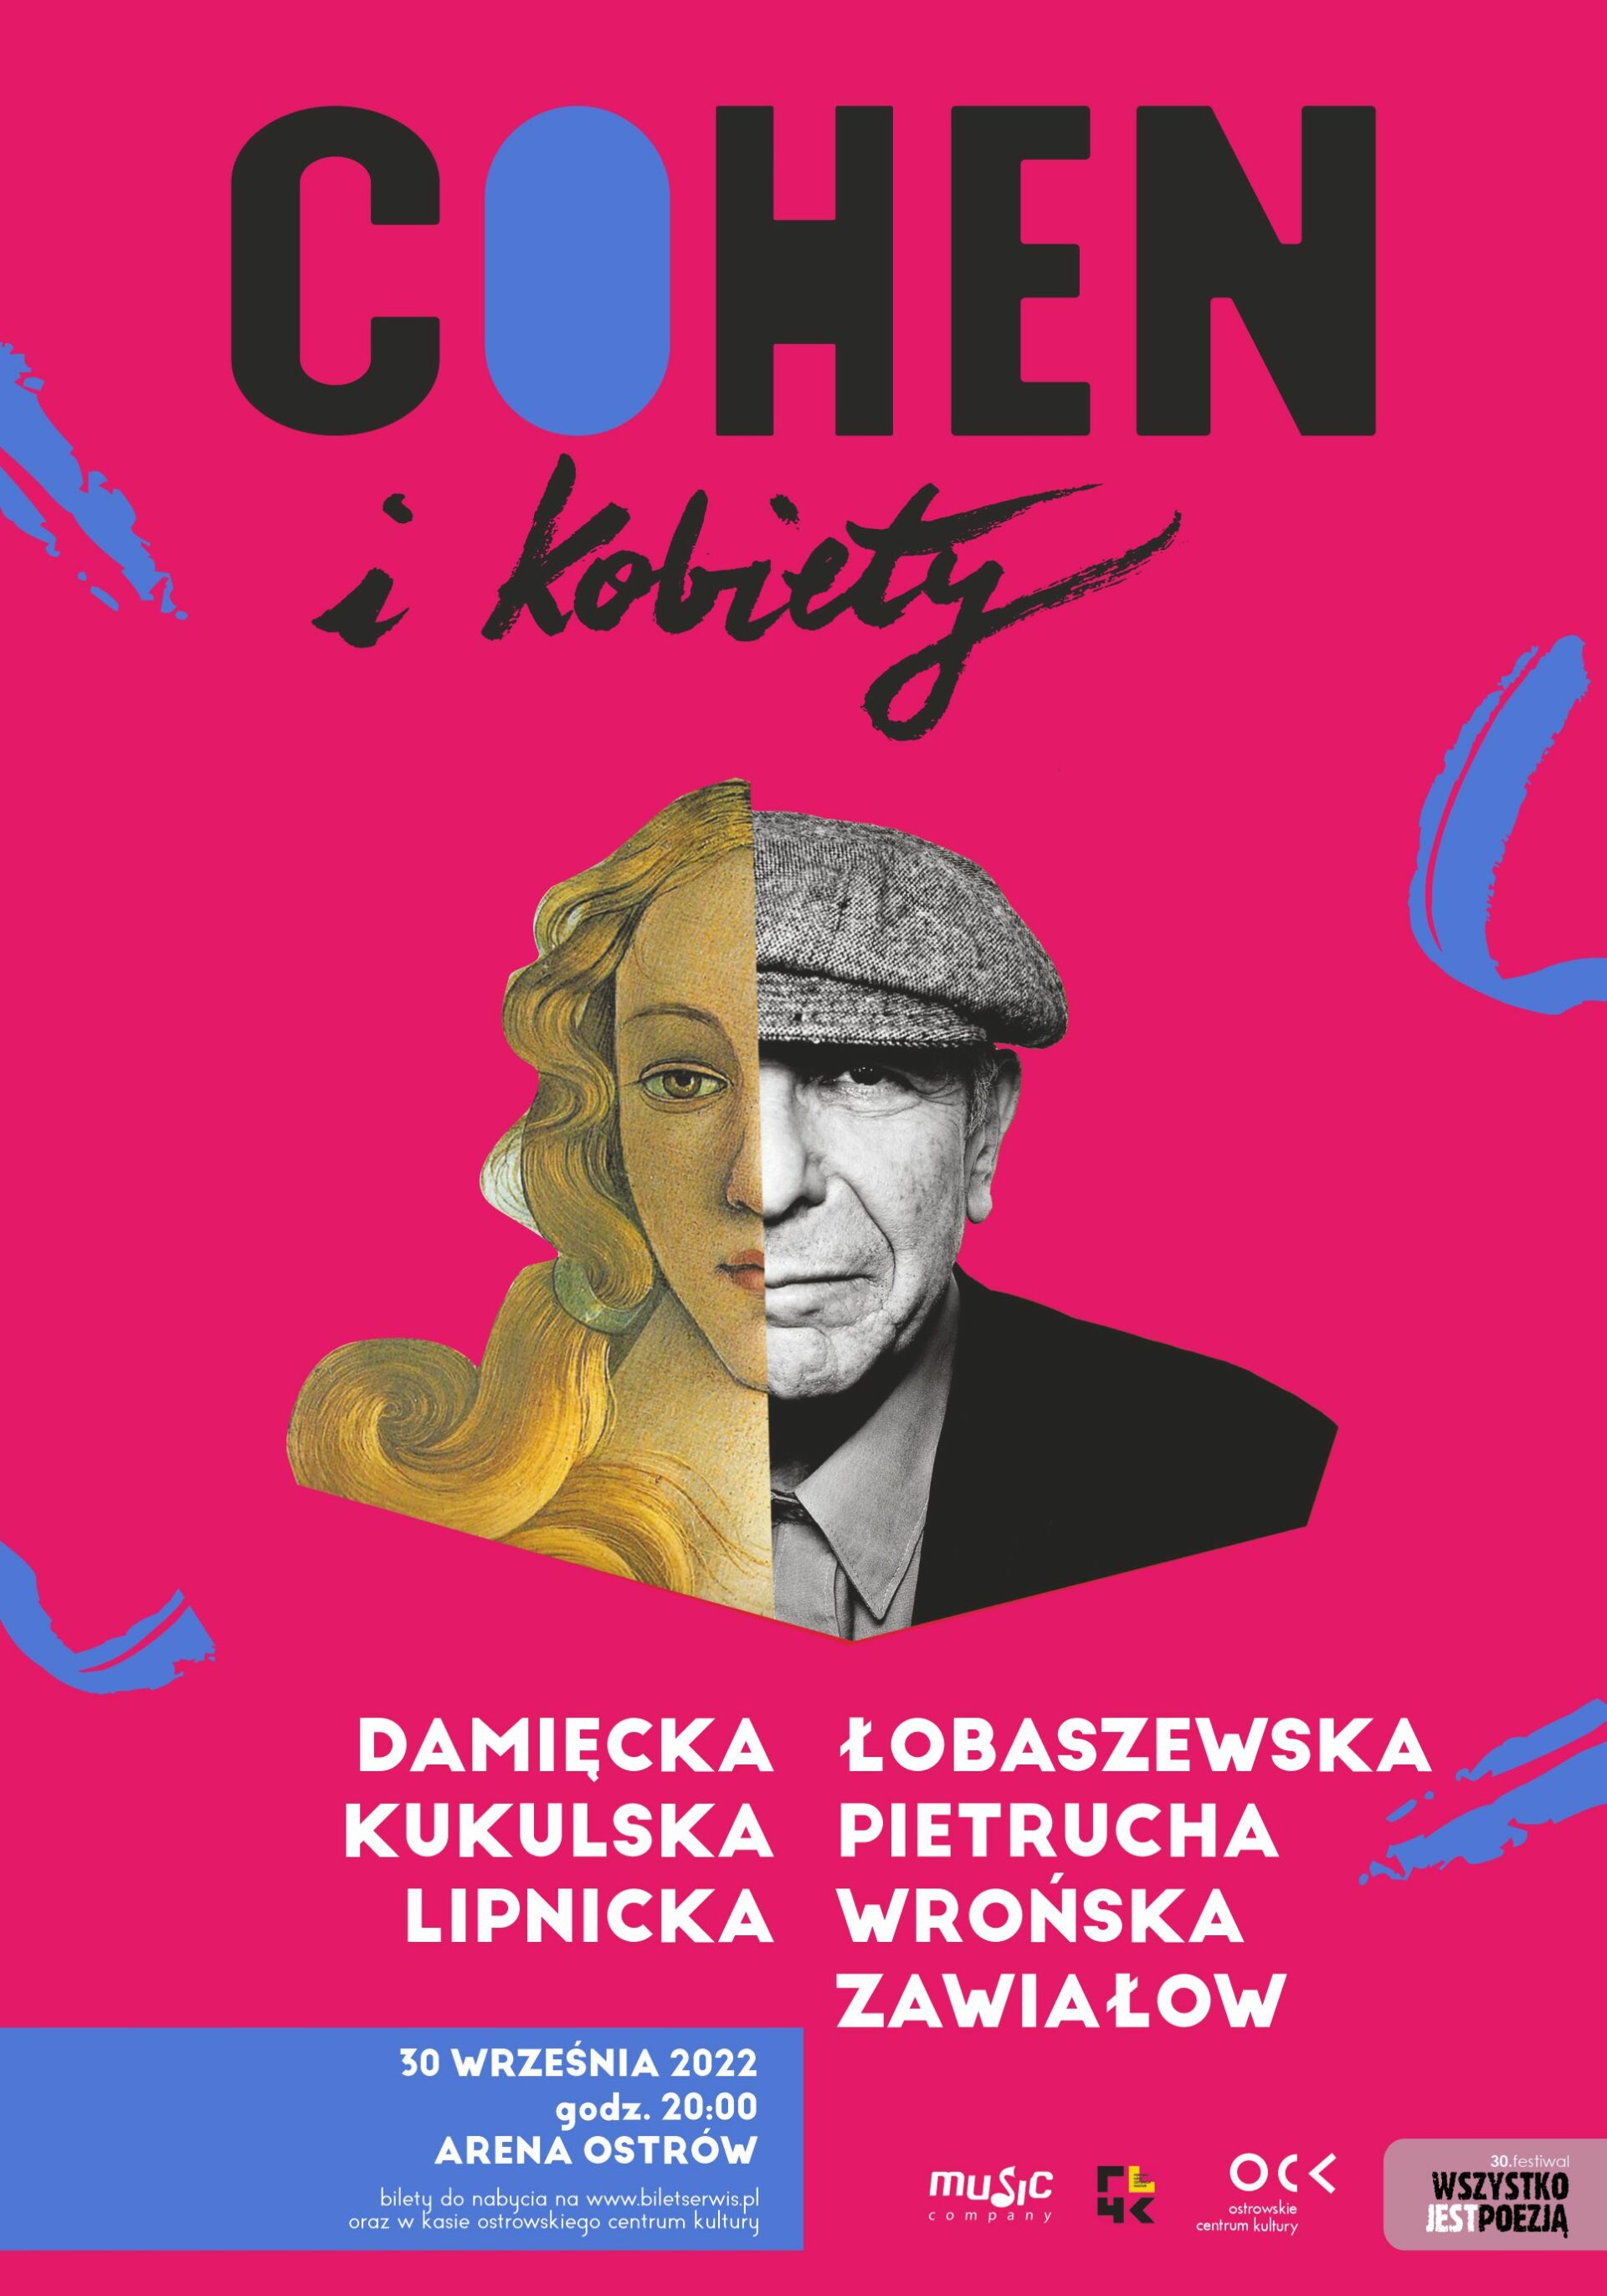 Cohen i kobiety | Ostrów Wielkopolski | 30. Festiwal Wszystko Jest Poezją